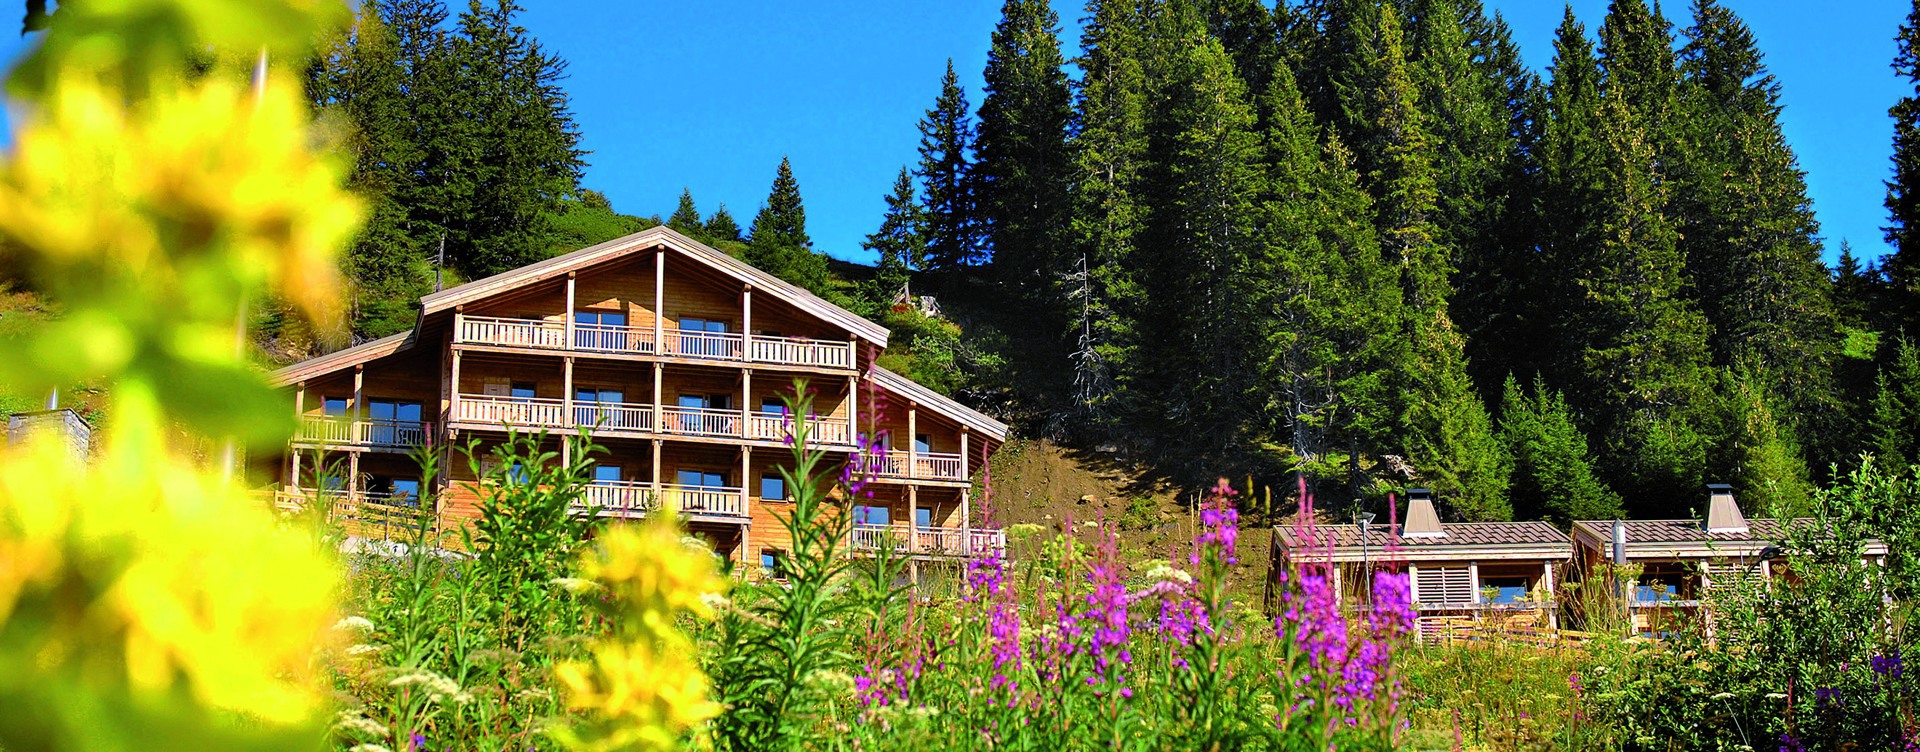 Erleben Sie einen wunderschönen Urlaub in den französischen Alpen